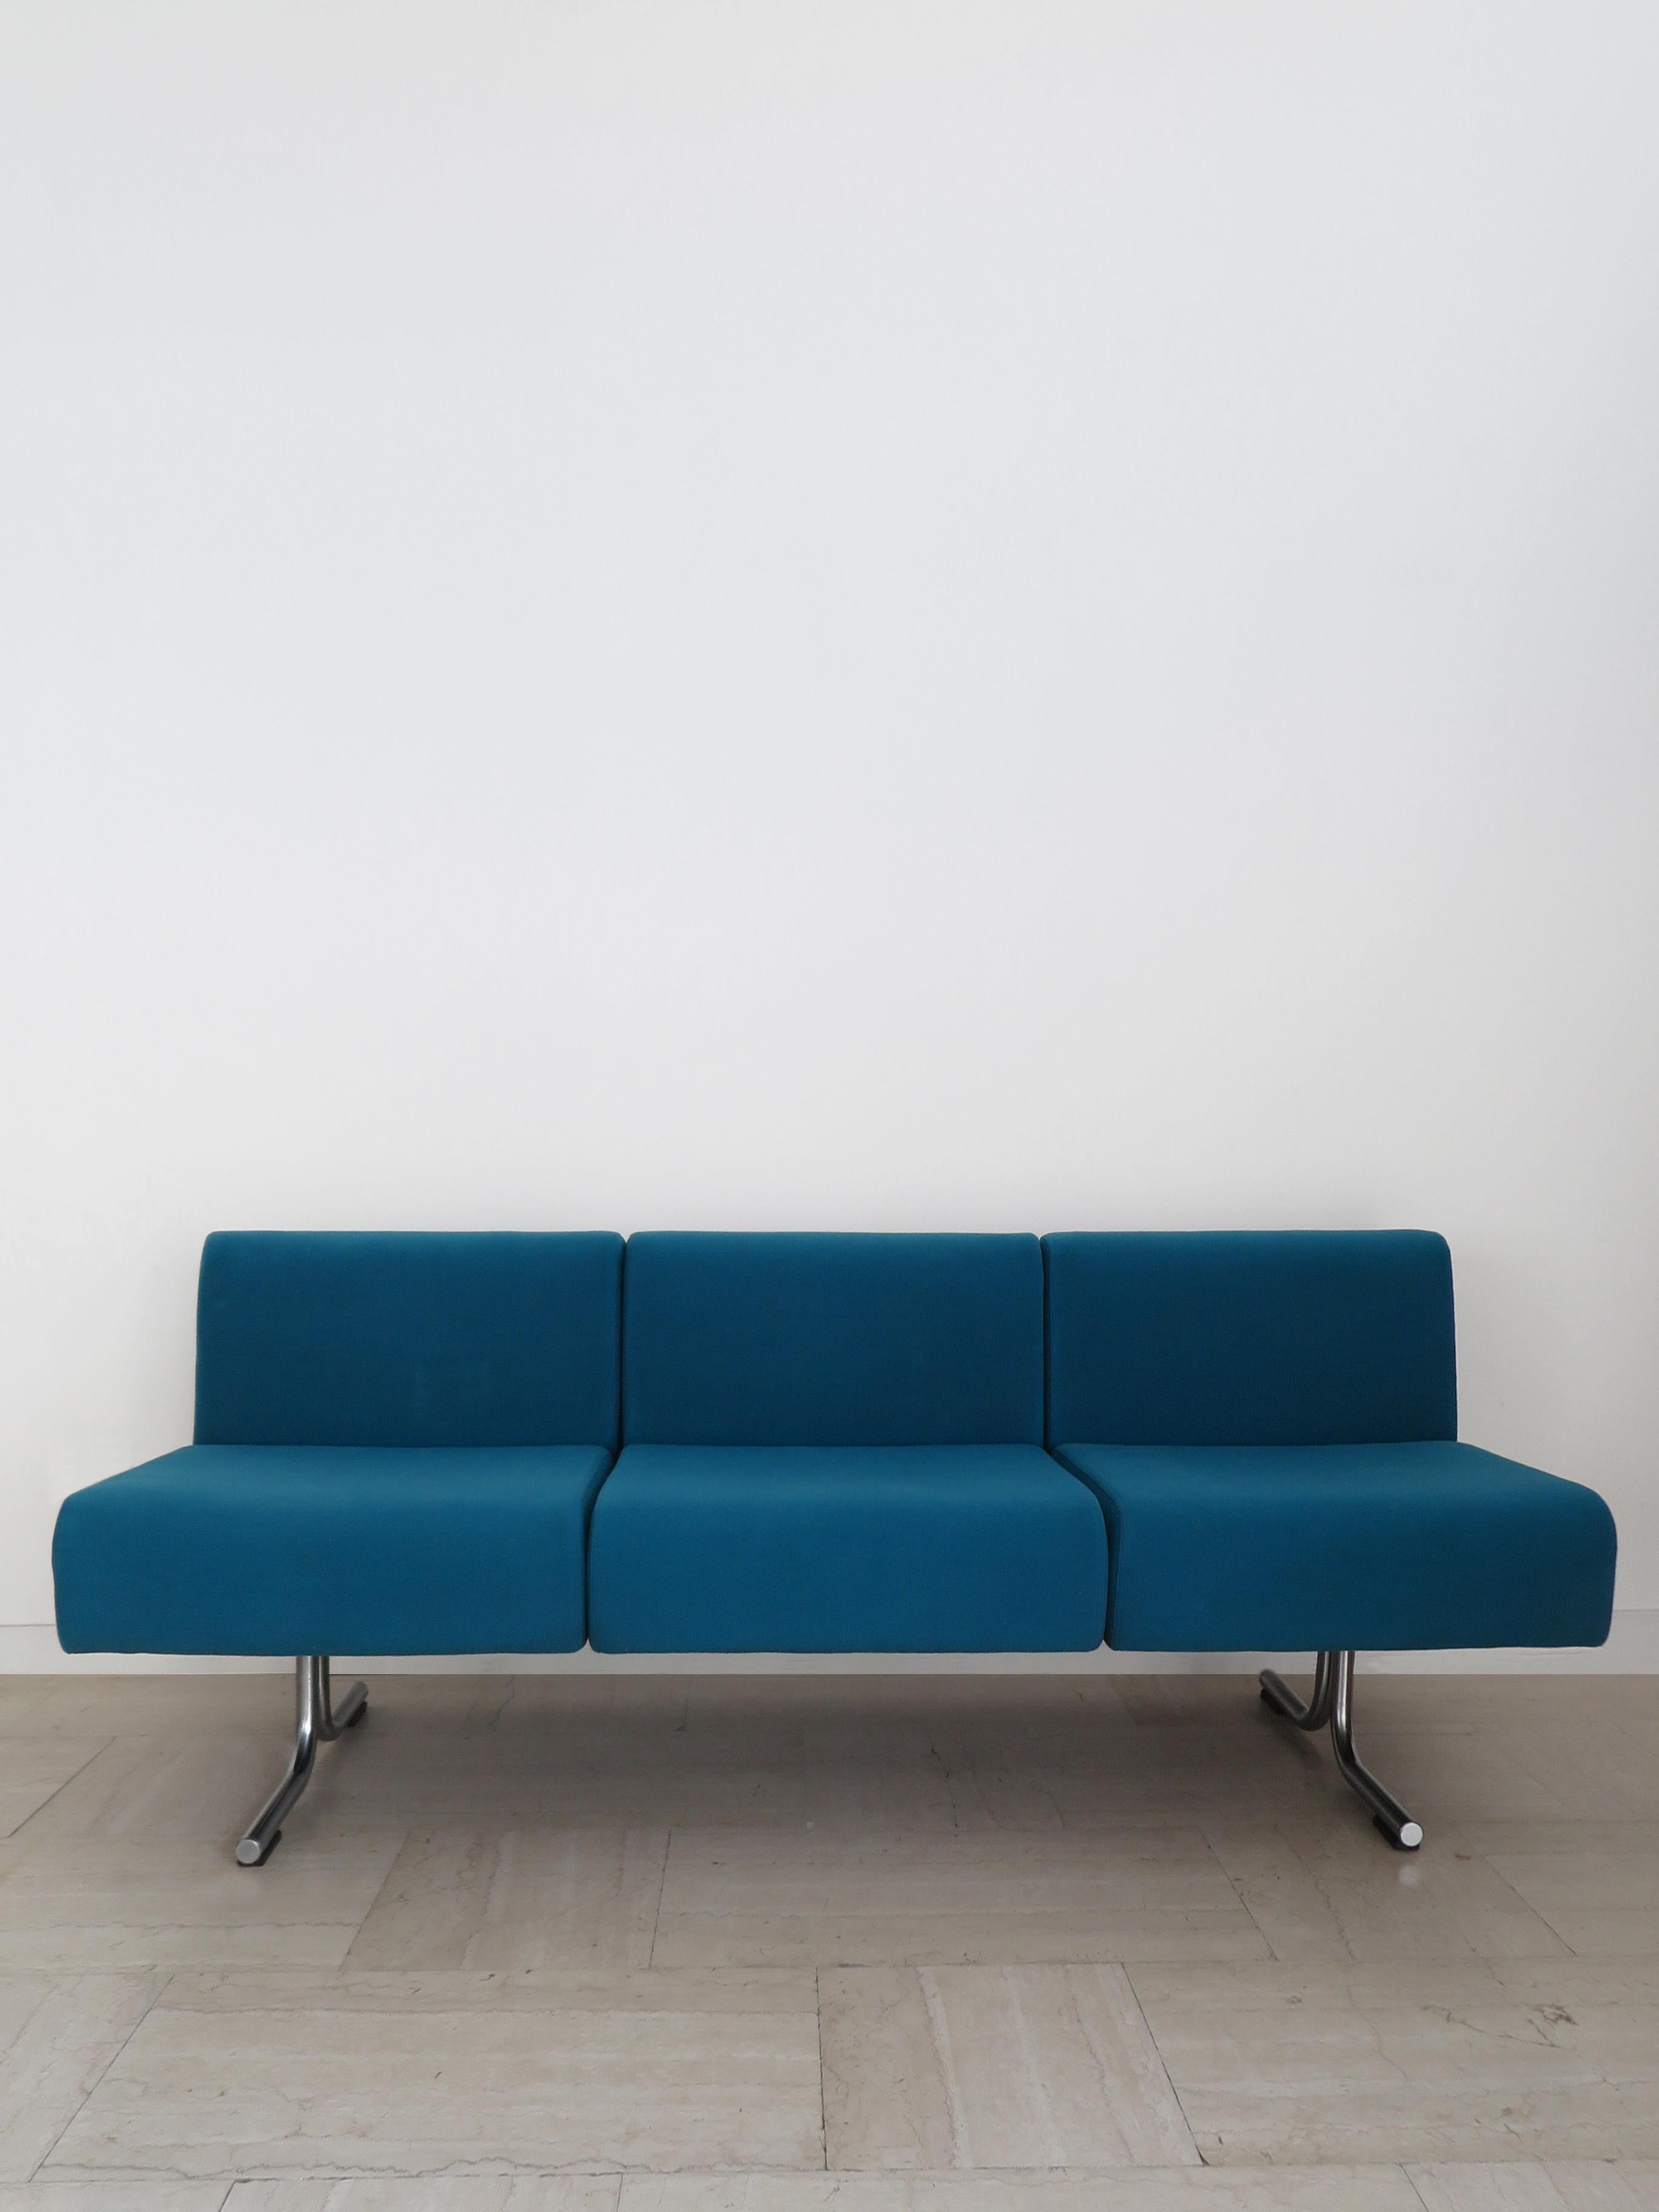 Italienisches Sofa, entworfen von Osvaldo Borsani (zugeschrieben) und hergestellt von Tecno, mit Originalstoff und Metallrahmen mit Herstellermarke, Produktion Italien ca. 1970er Jahre.

Bitte beachten Sie, dass das Sofa original aus der Zeit stammt